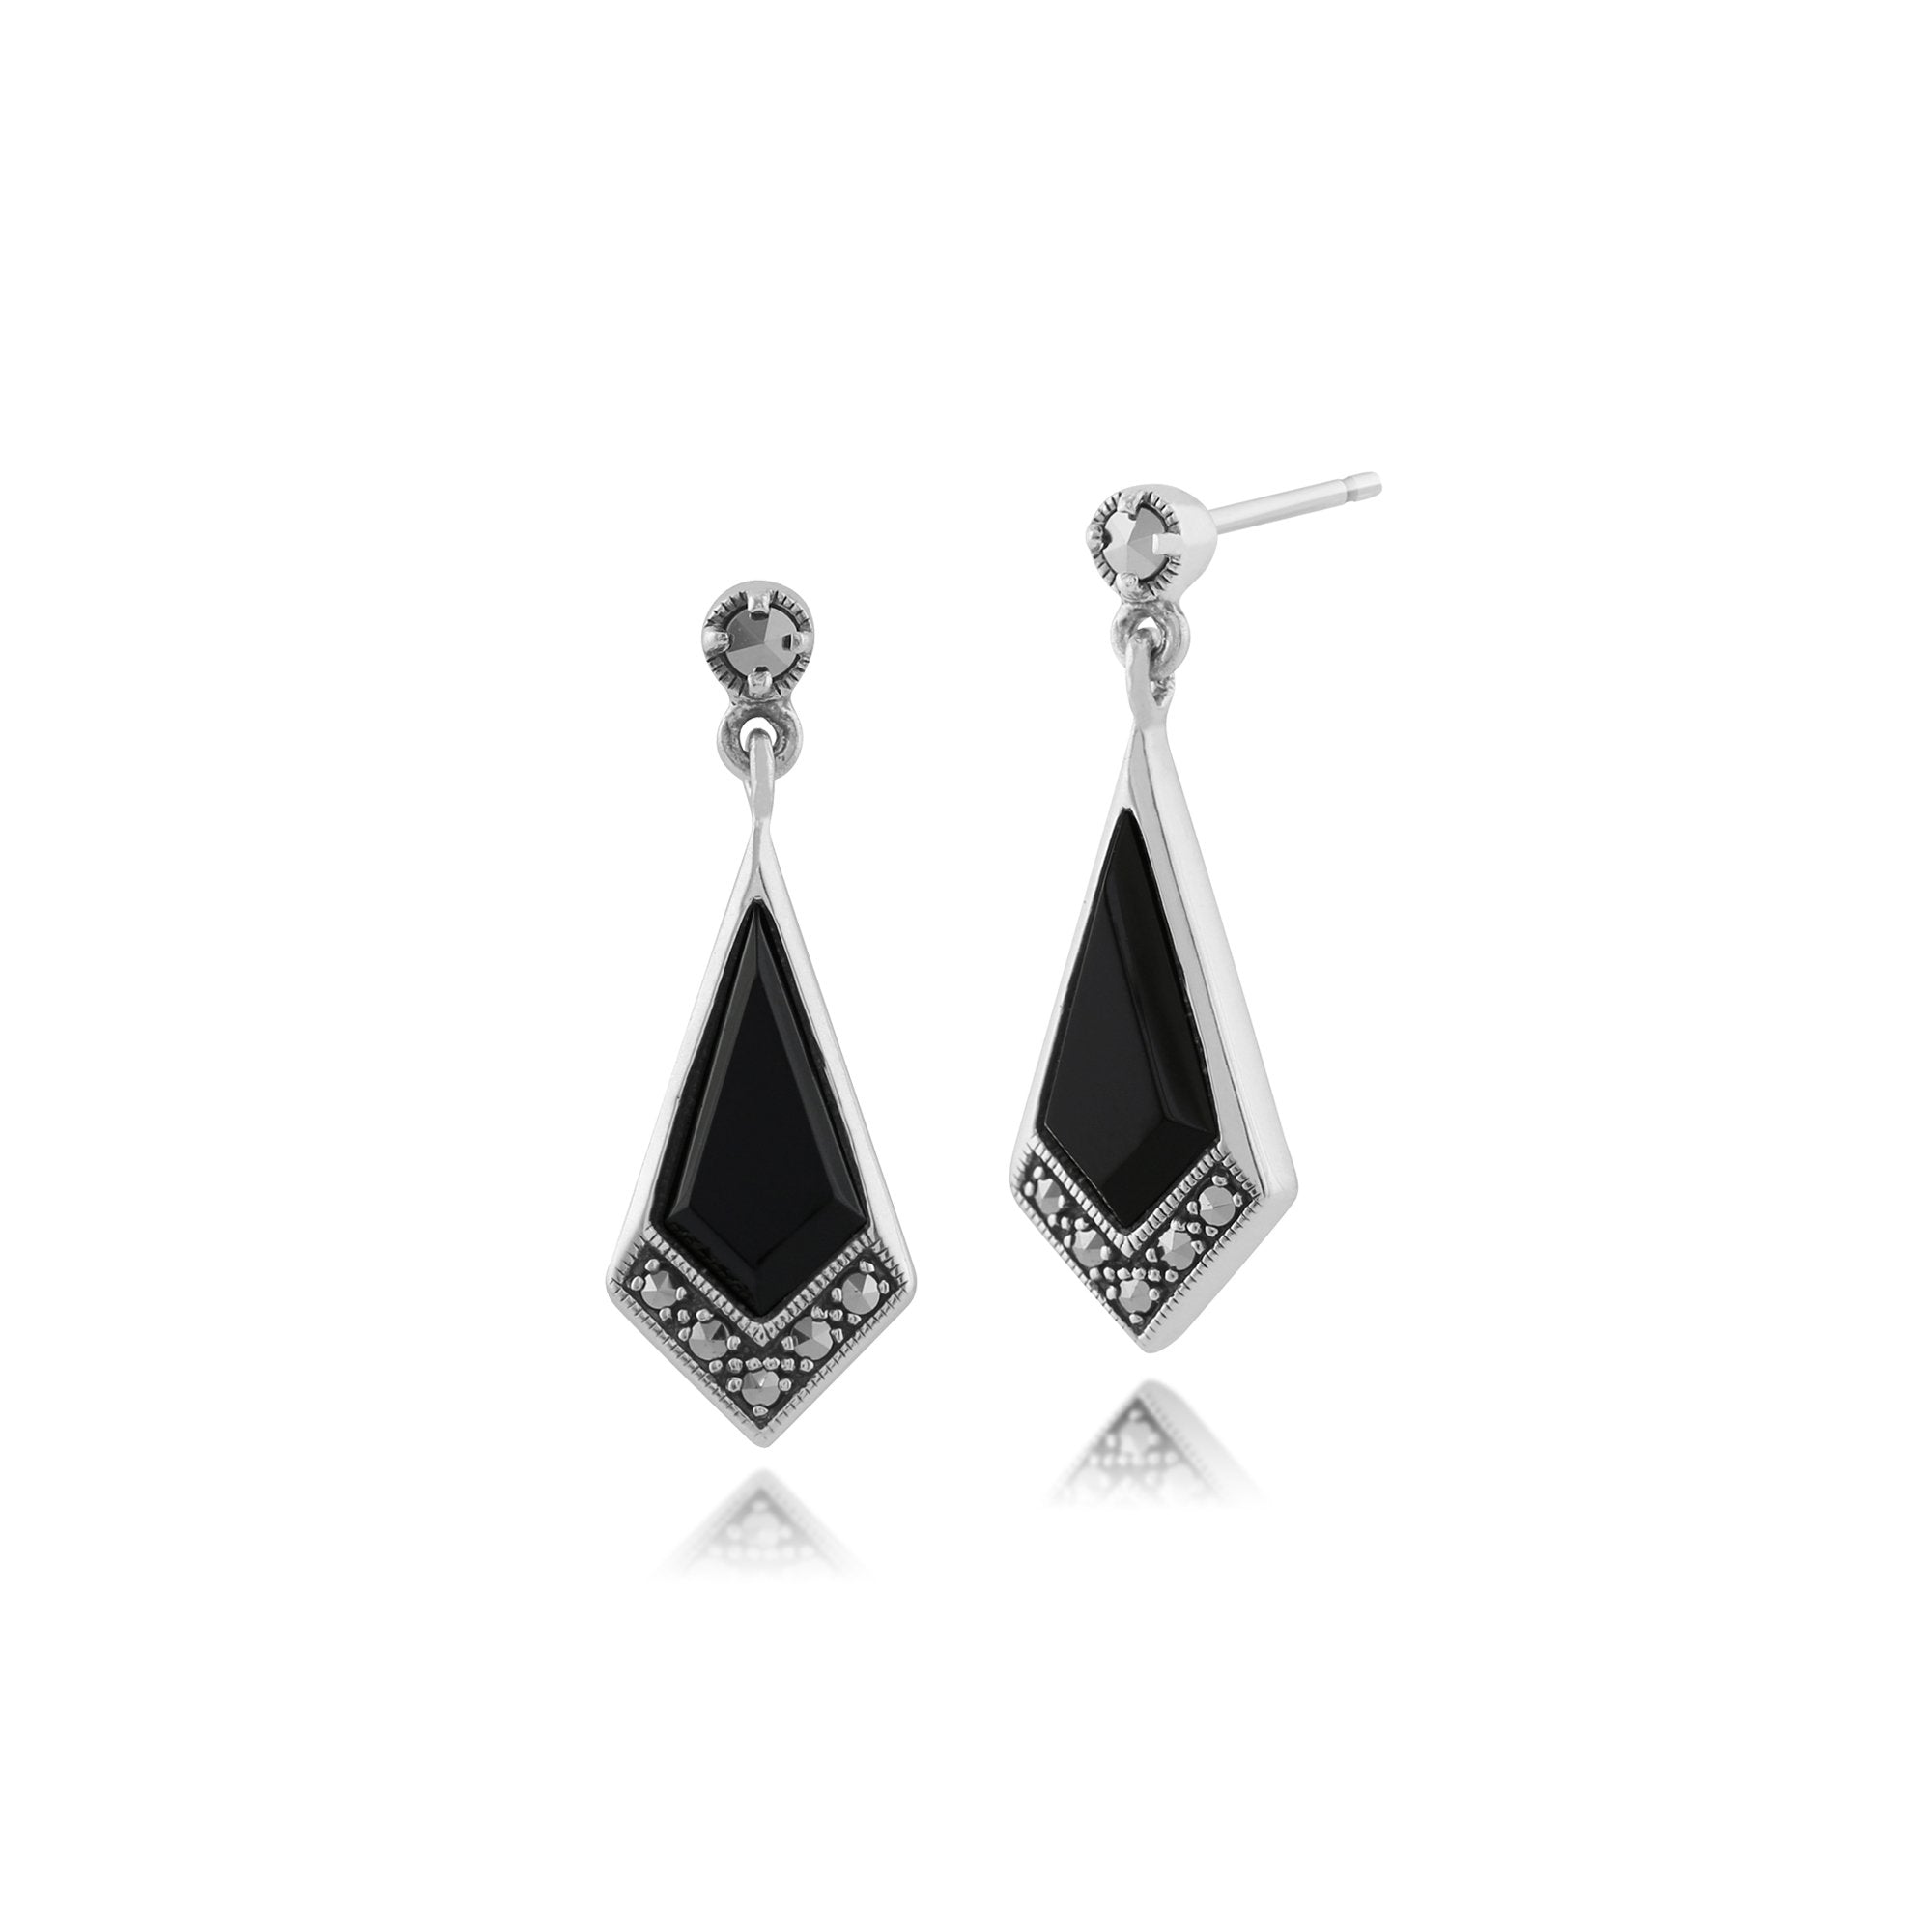 Art Deco Style Black Onyx & Marcasite Kite Drop Earrings in 925 Sterling Silver